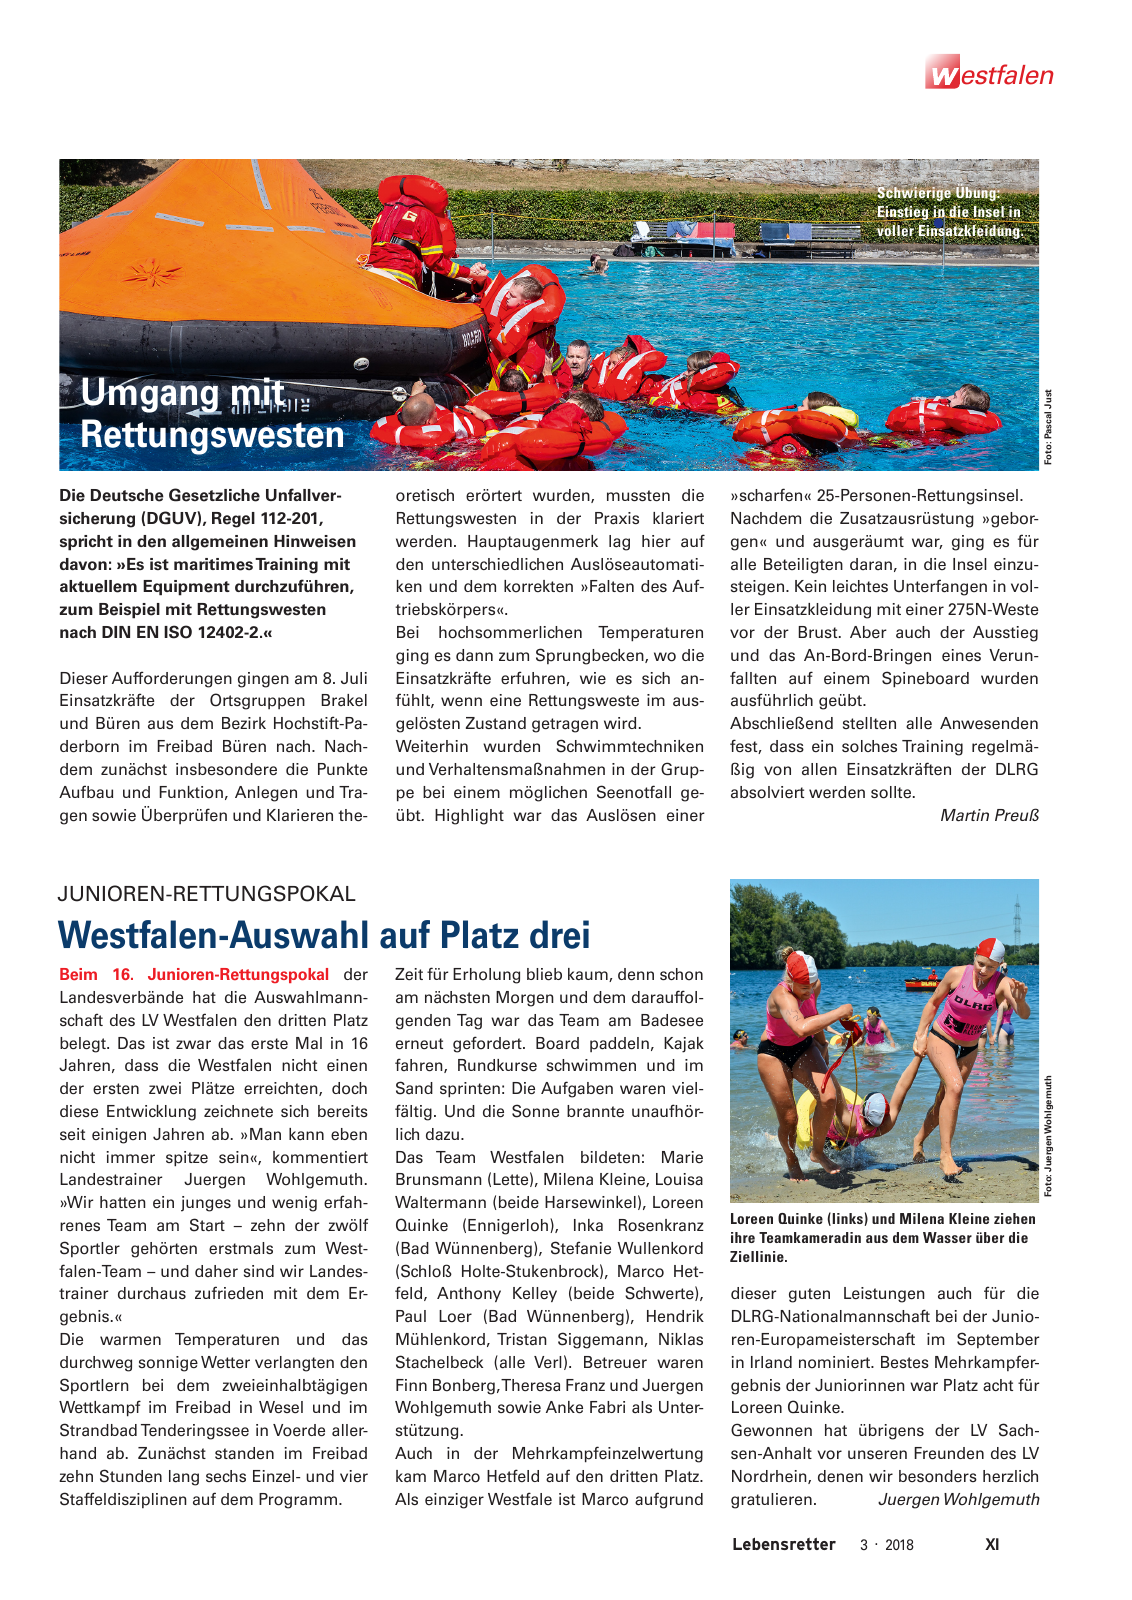 Vorschau Lebensretter 3/2018 - Regionalausgabe Westfalen Seite 13